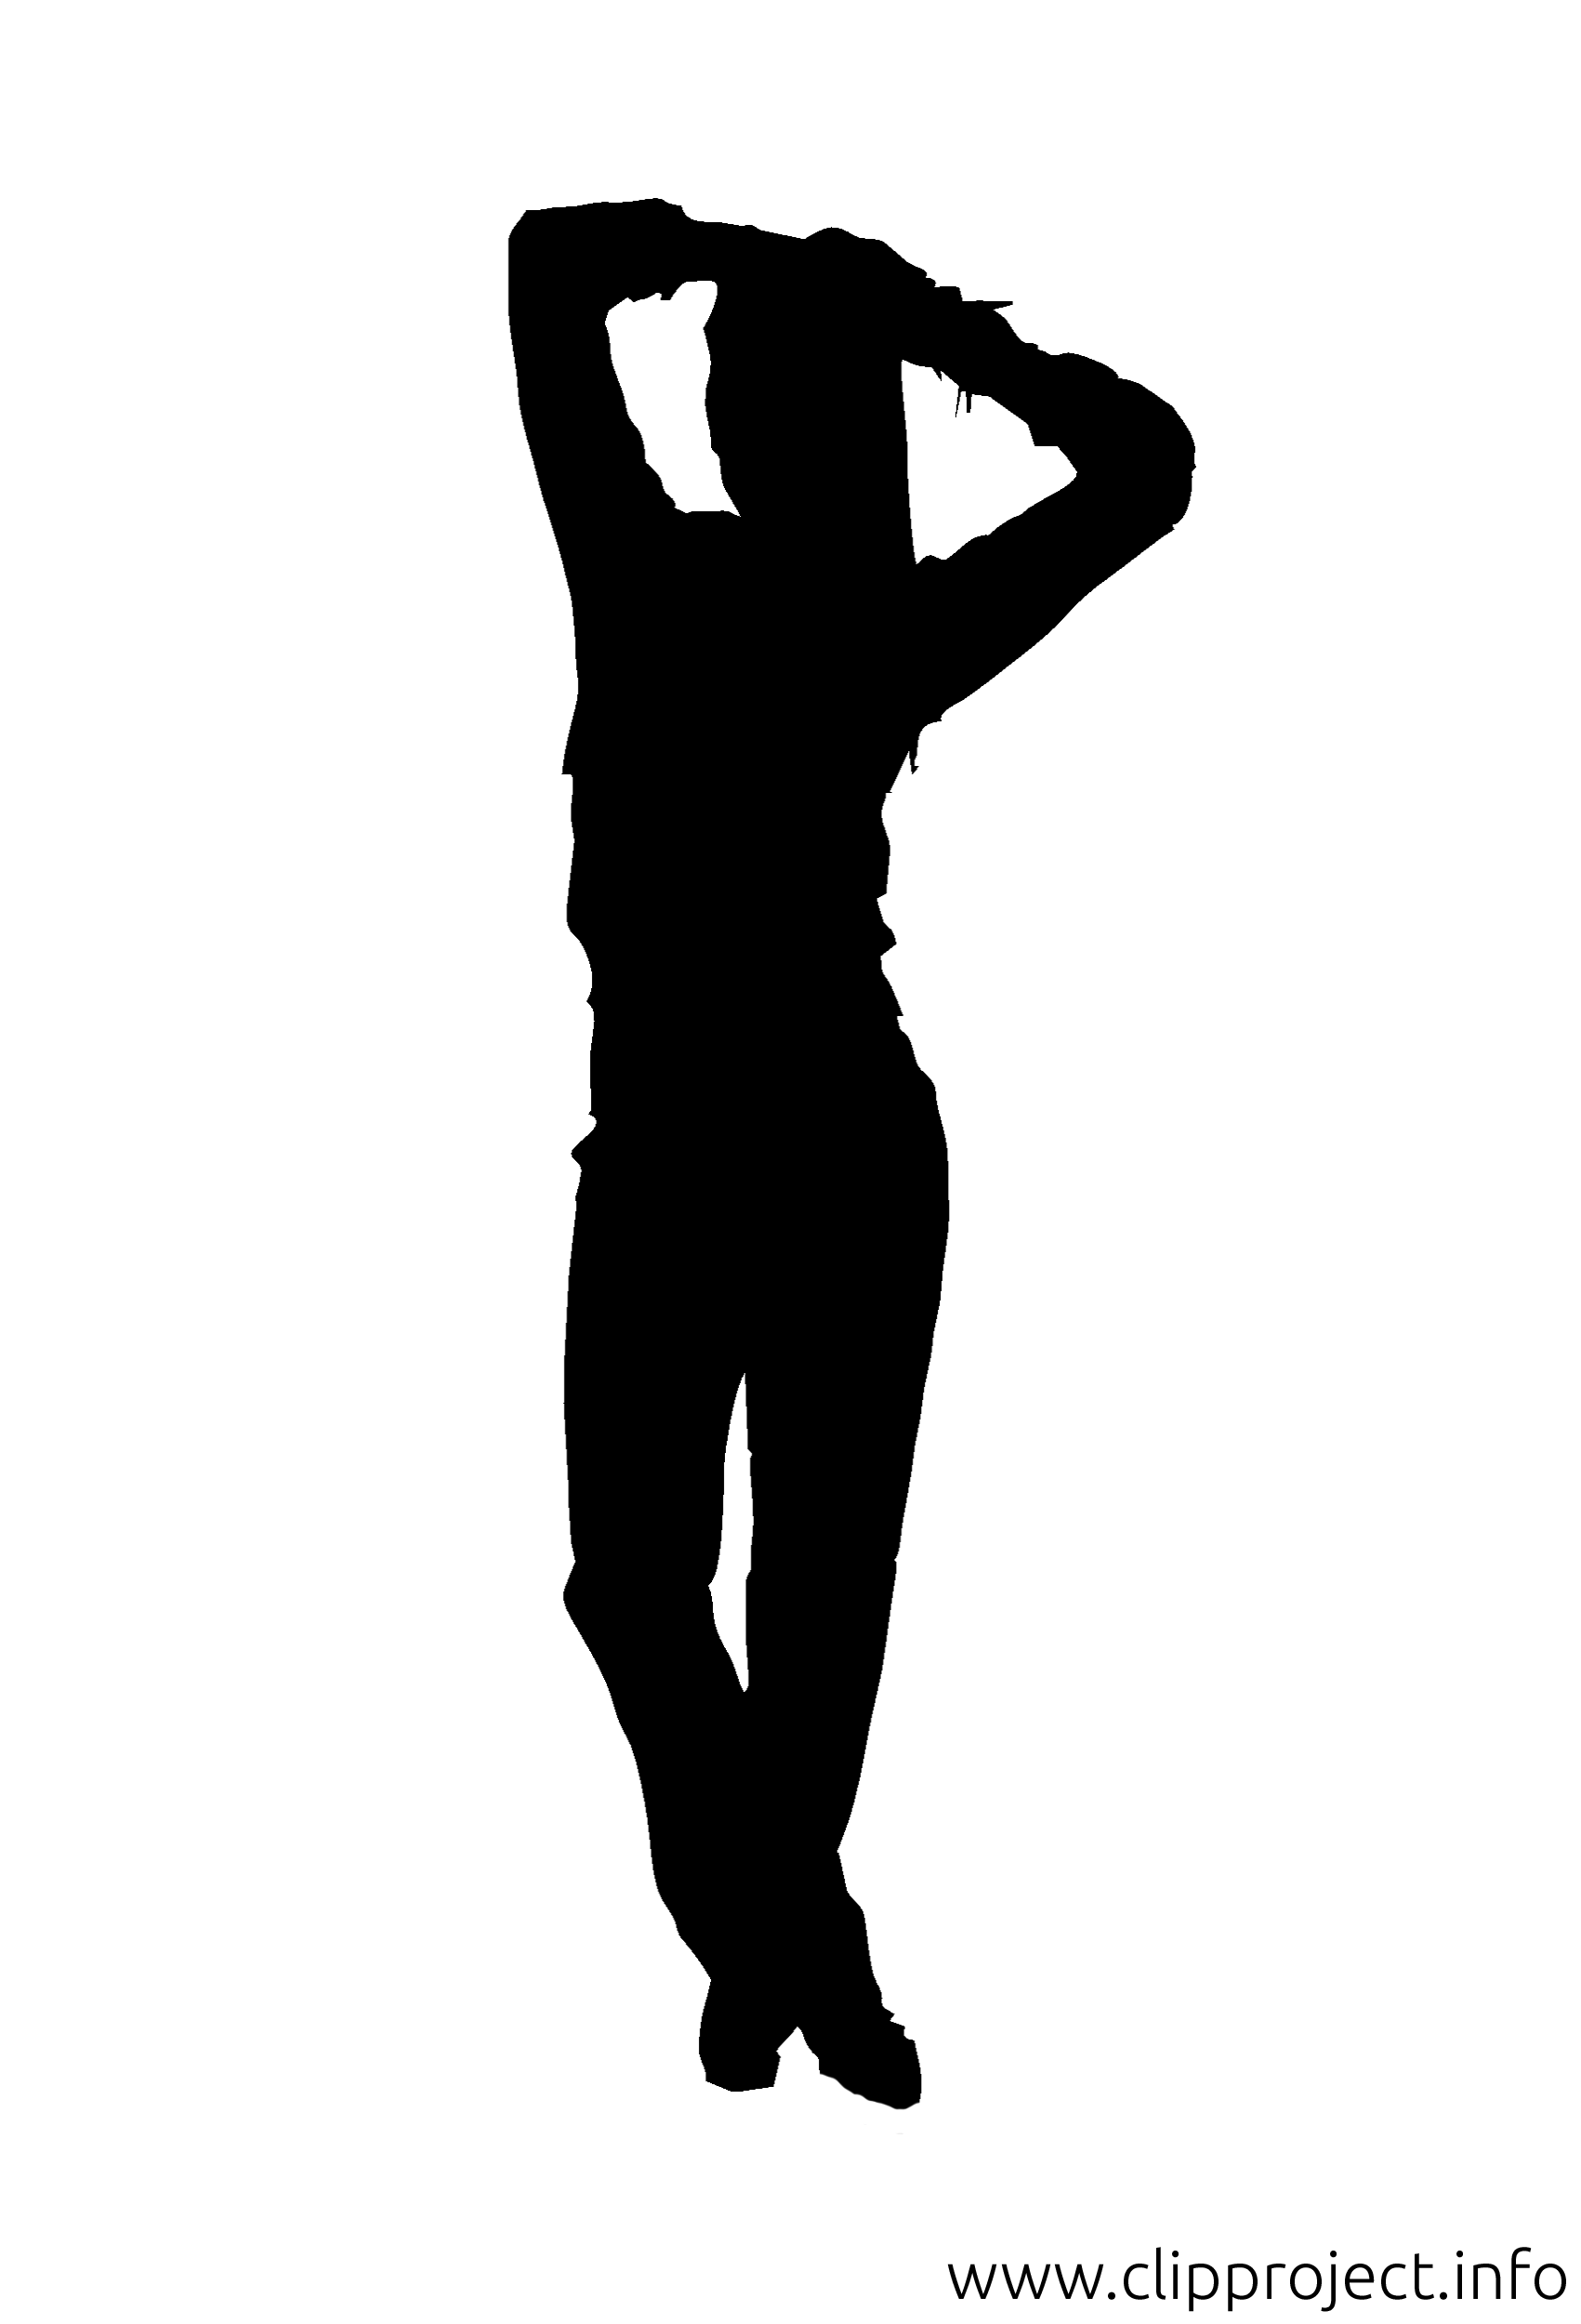 Bildtitel  Fitness Girl Silhouette Clipart